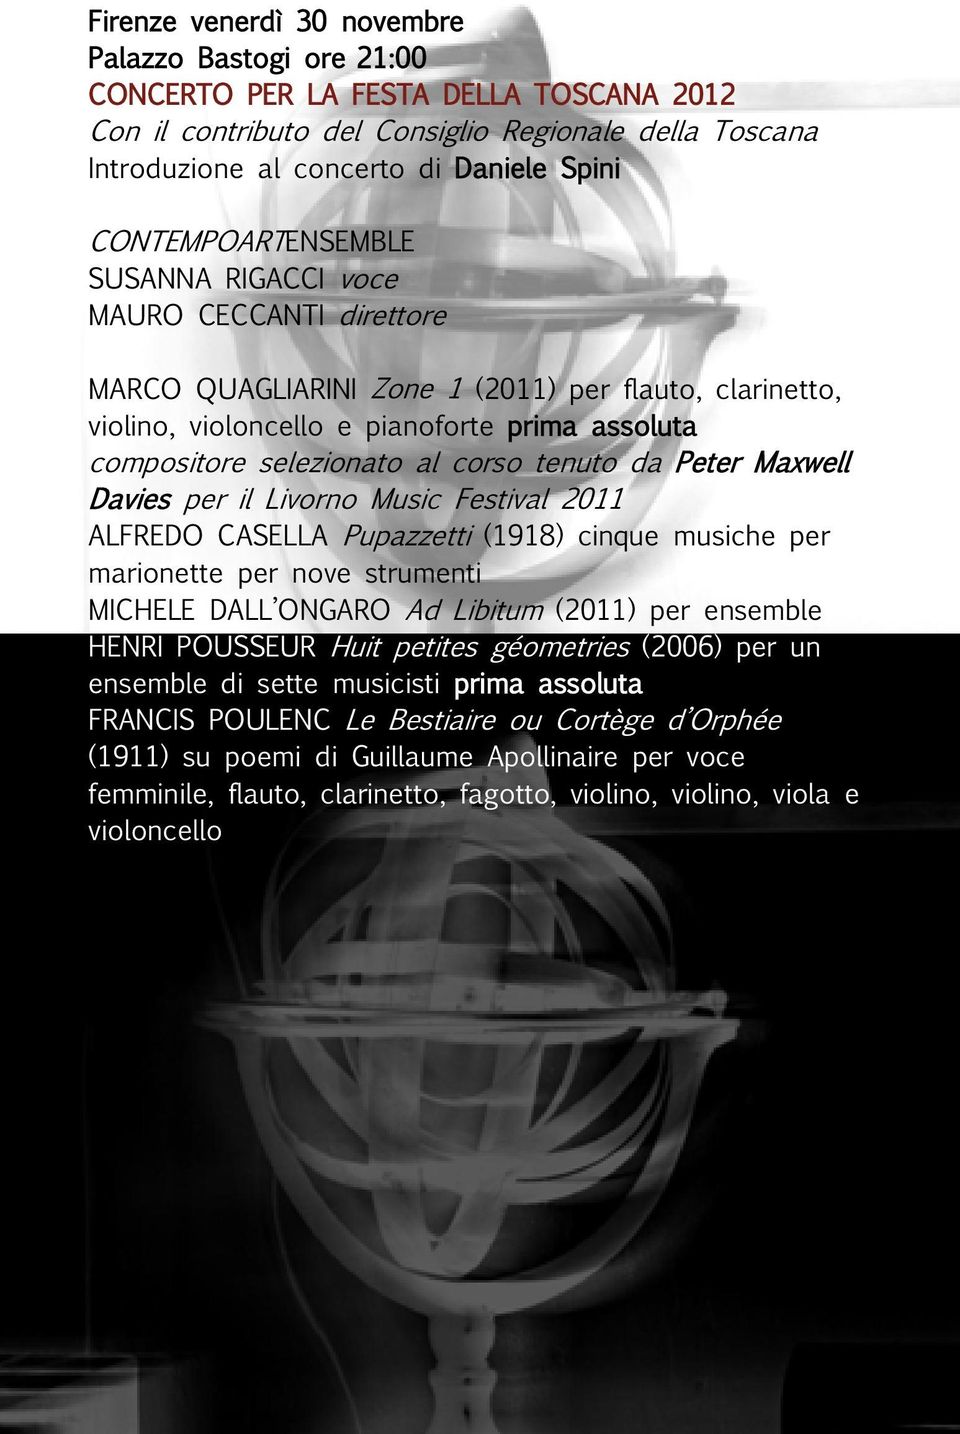 corso tenuto da Peter Maxwell Davies per il Livorno Music Festival 2011 ALFREDO CASELLA Pupazzetti (1918) cinque musiche per marionette per nove strumenti MICHELE DALL ONGARO Ad Libitum (2011) per